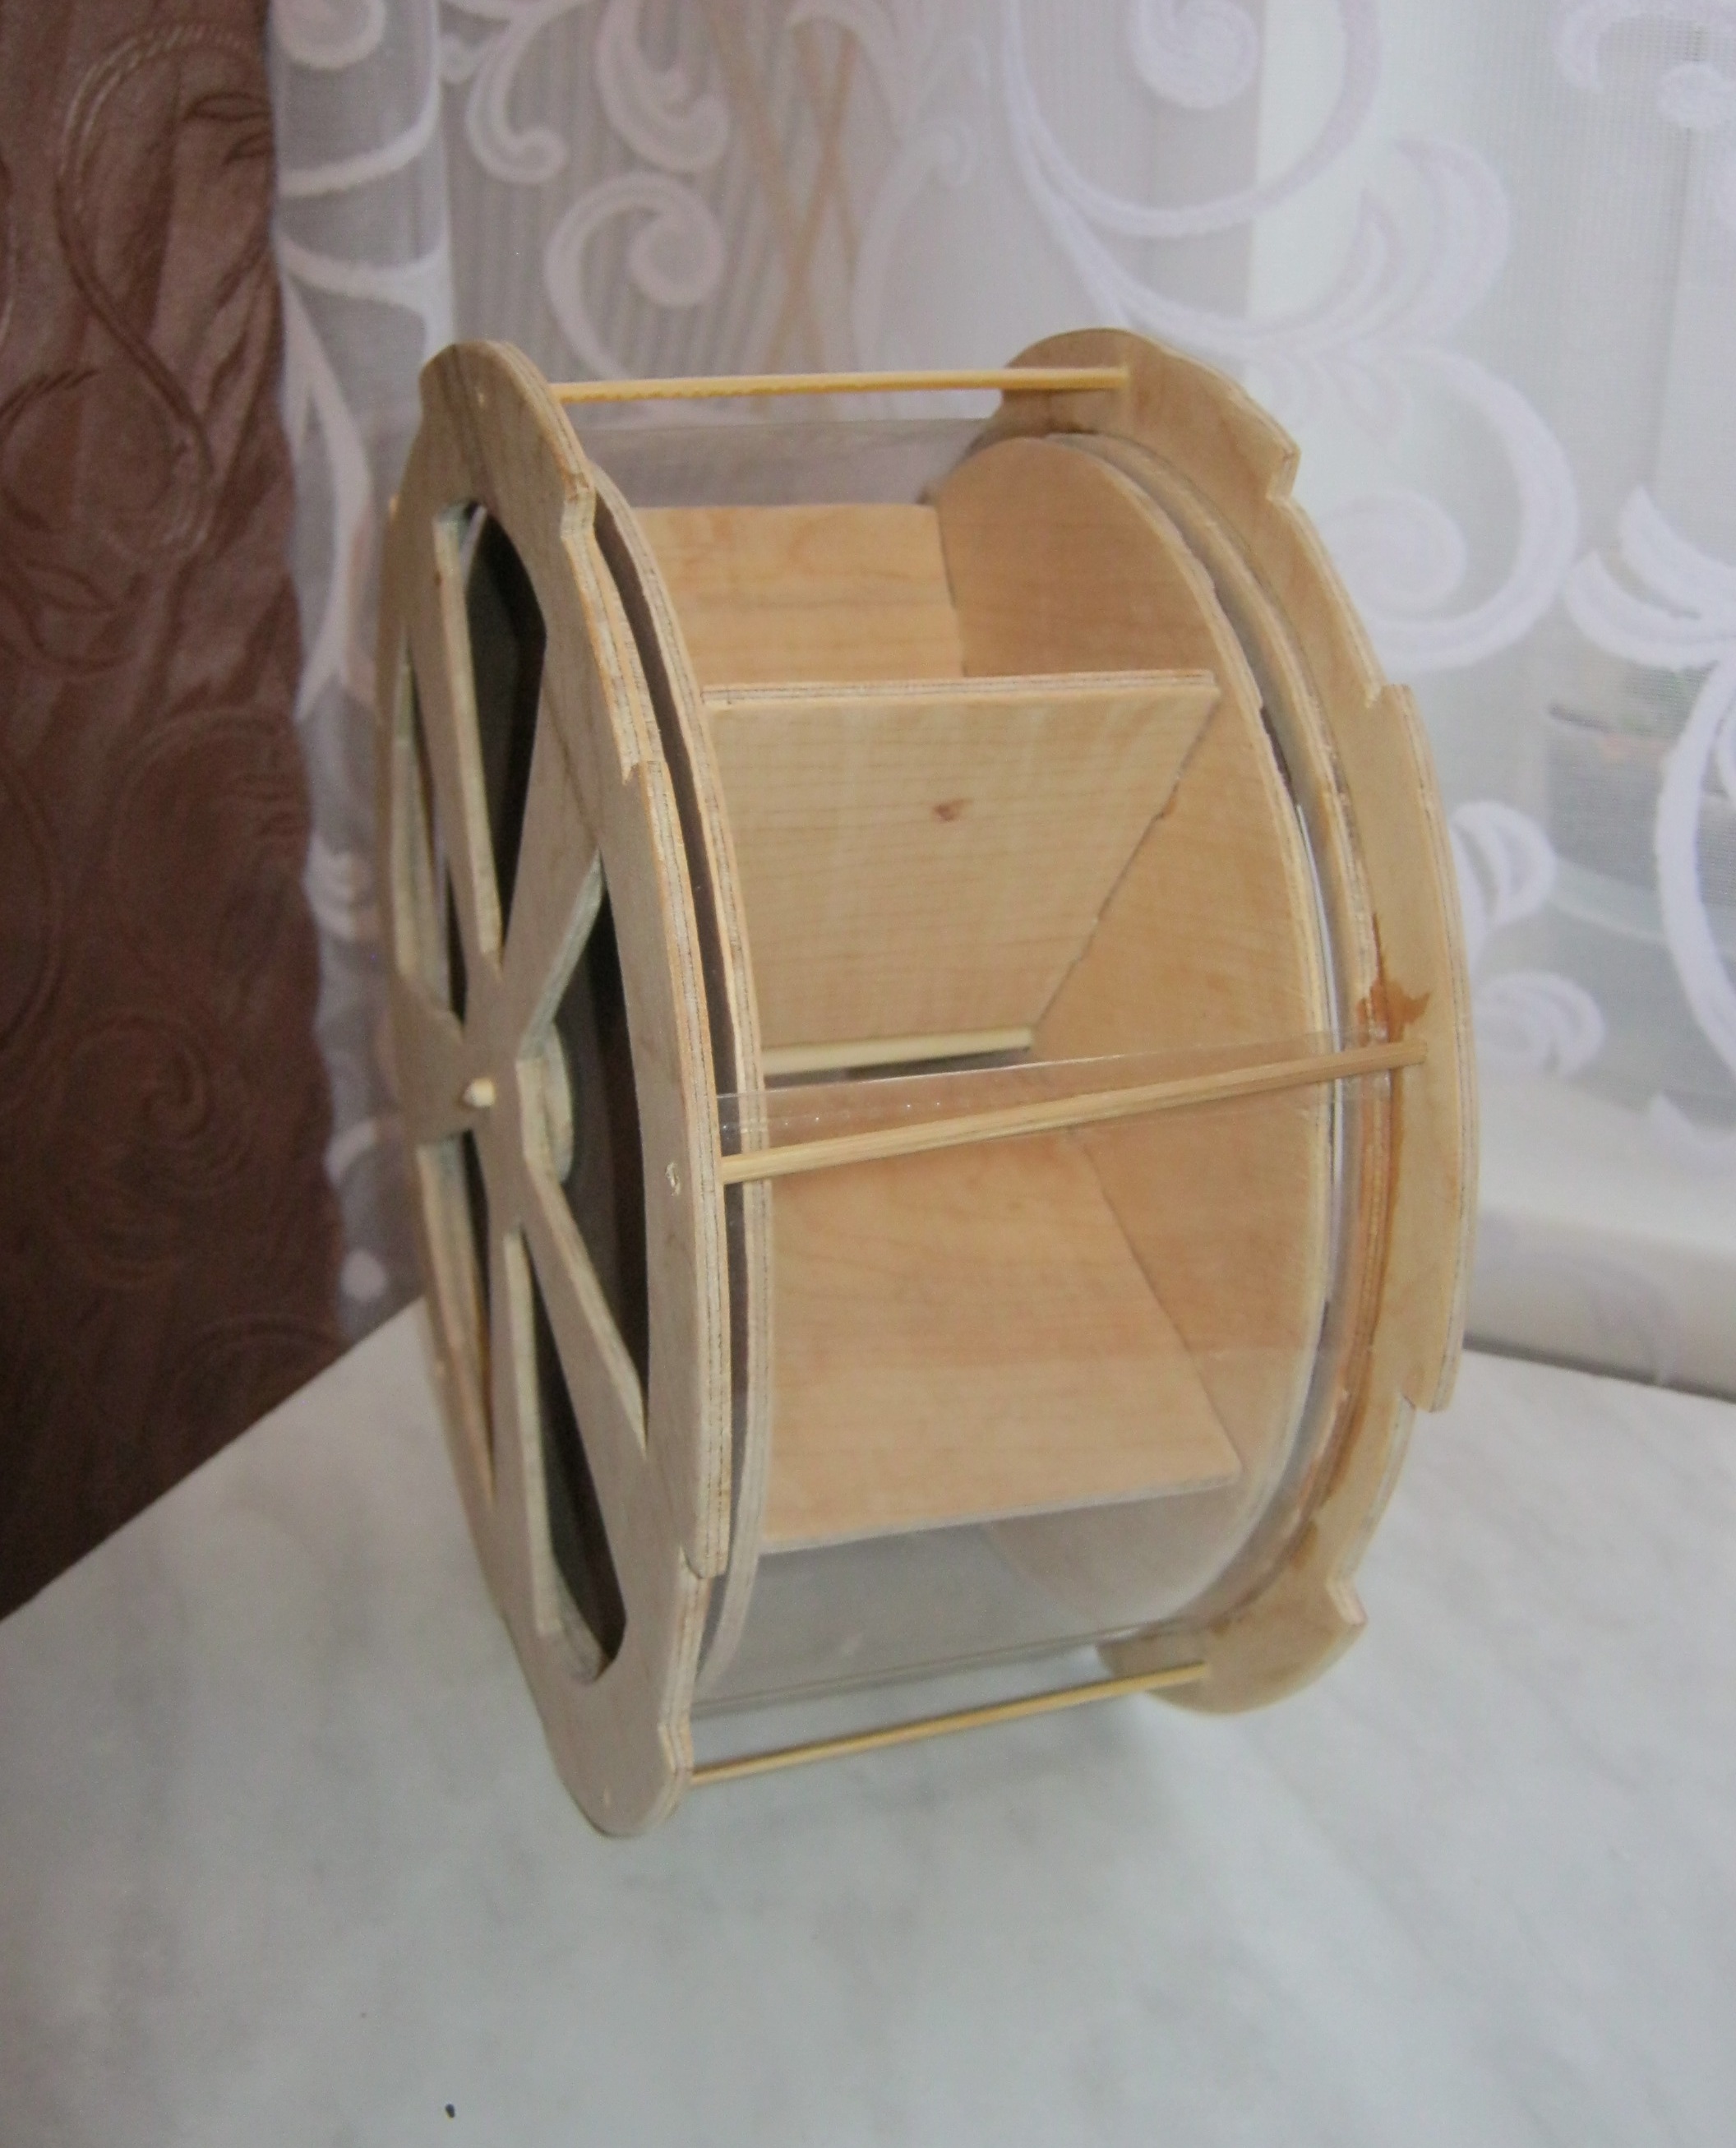 Проектная работа учащегося 5 класса Изготовление контейнера для хранения чая в пакетиках-Чайного колеса